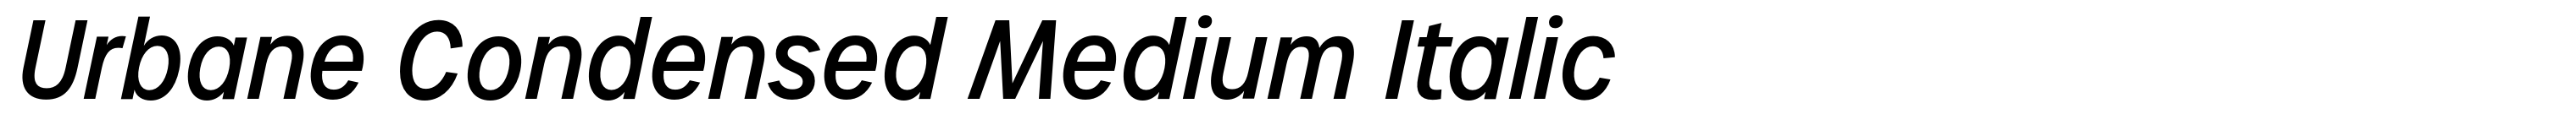 Urbane Condensed Medium Italic